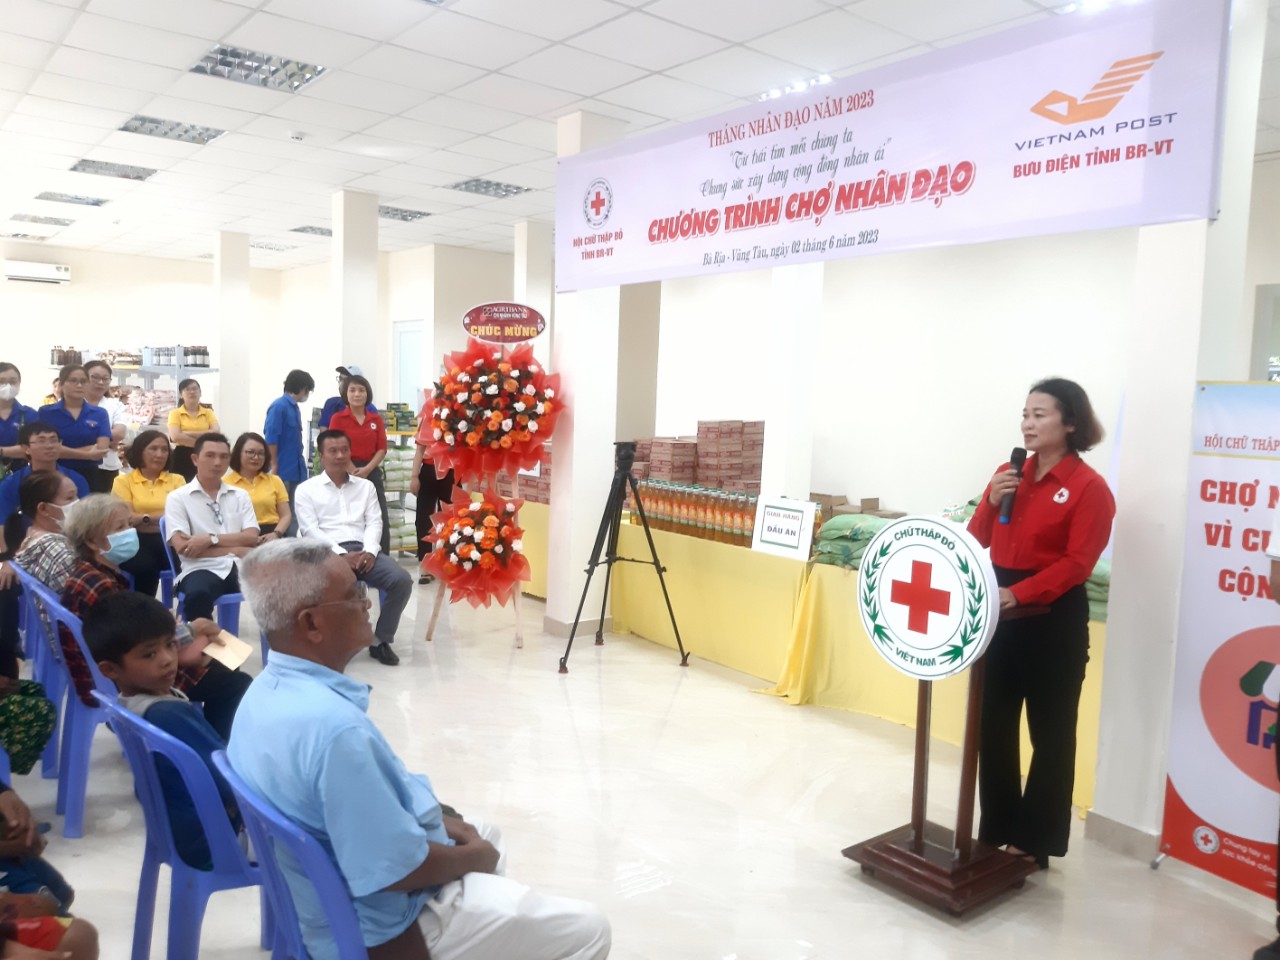 Hội Chữ thập đỏ tỉnh Bà Rịa - Vũng Tàu tổ chức “Chợ Nhân đạo” tại Bưu điện tỉnh Bà Rịa - Vũng Tàu - Ảnh 1.